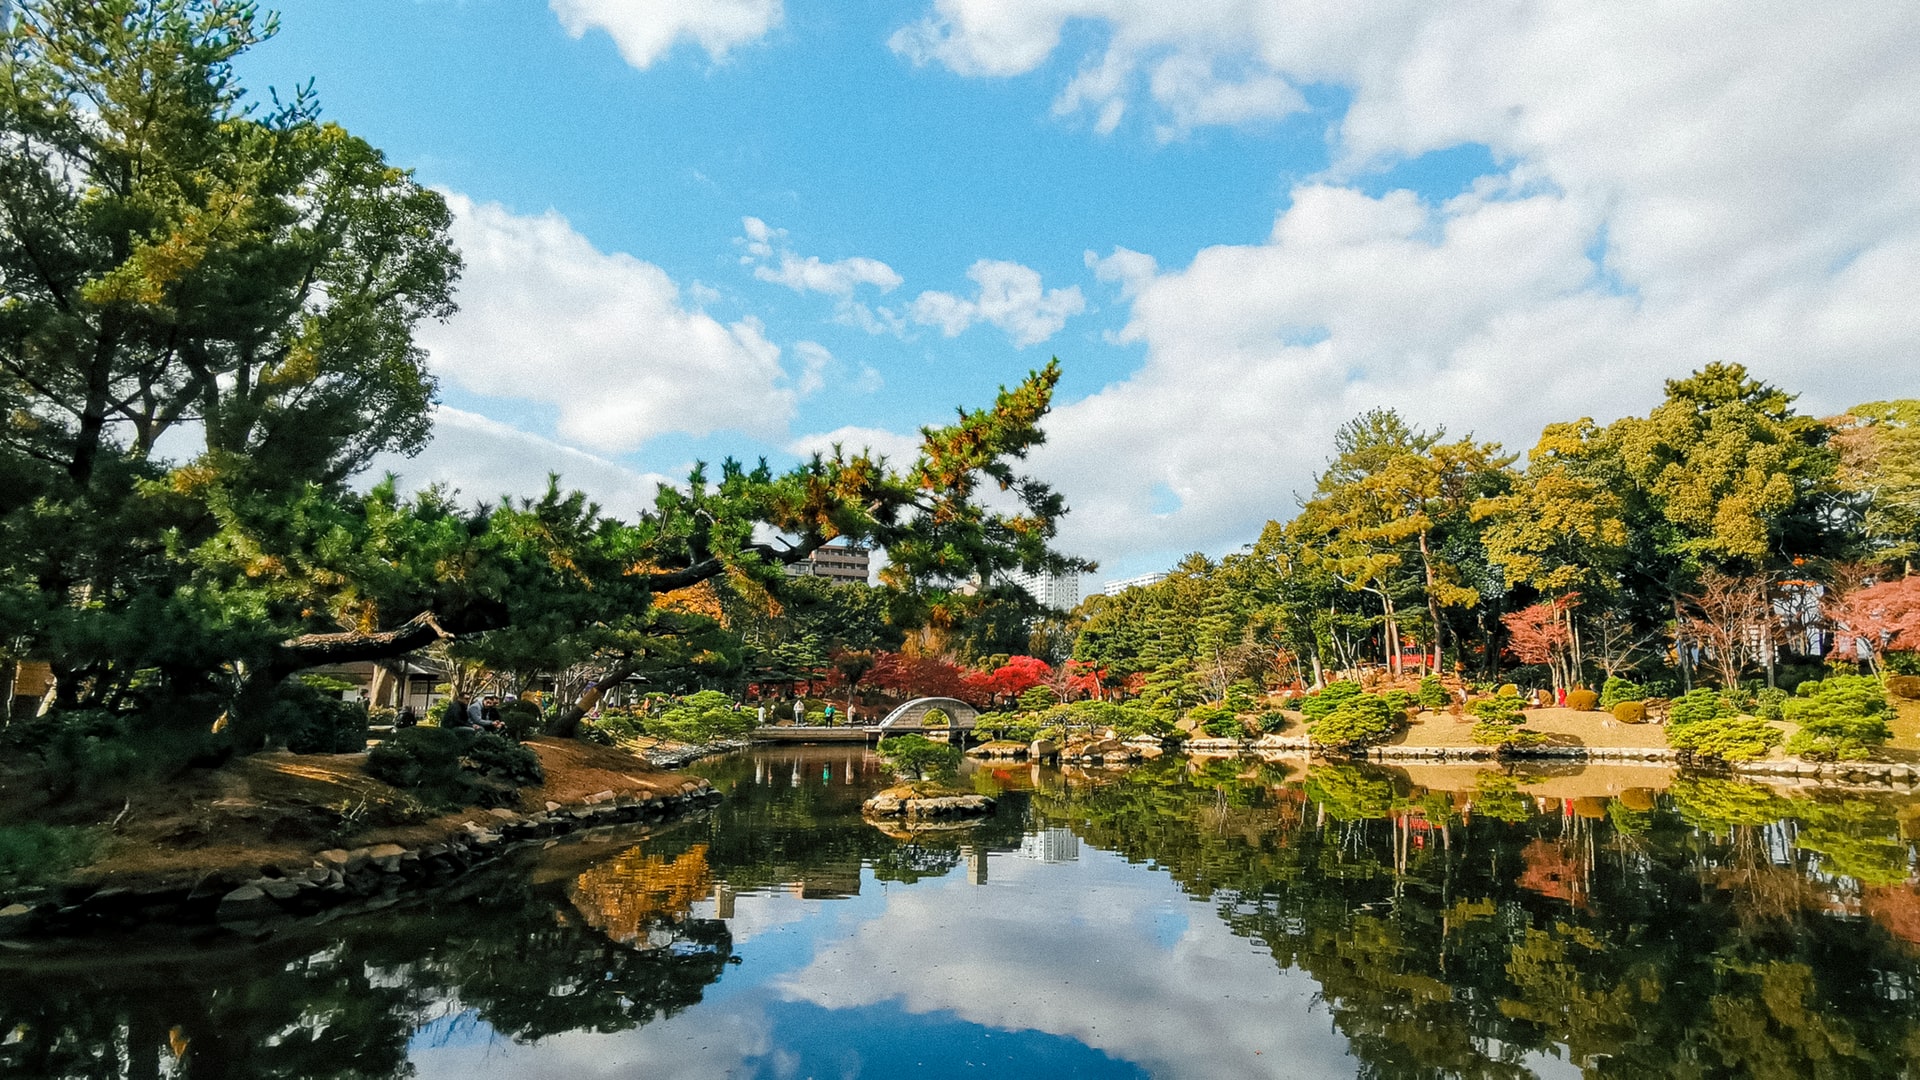 Shukkeien Japanese Garden in the centre of Hiroshima, Japan